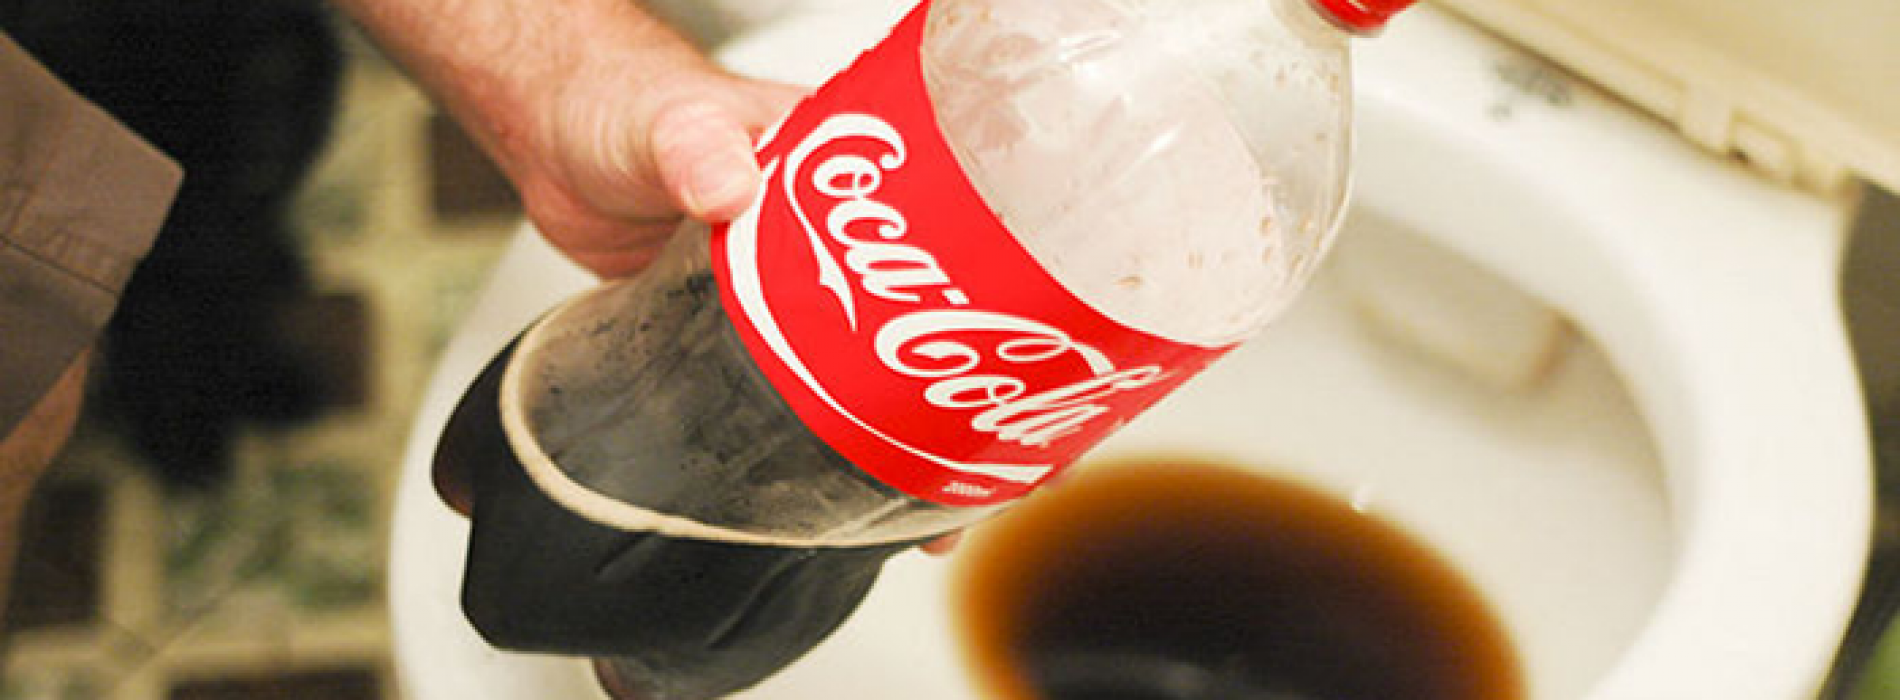 20 gebruikte toepassingen met Coca Cola.. Dit bewijst dat het niet thuis hoort in het menselijk lichaam